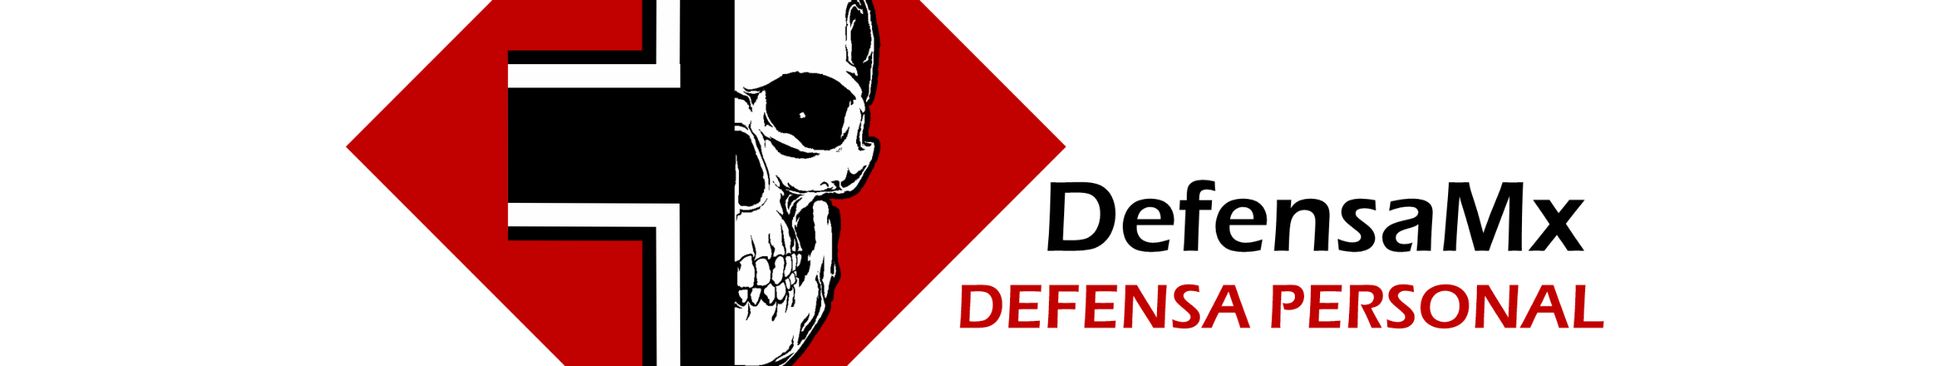 DefensaMx